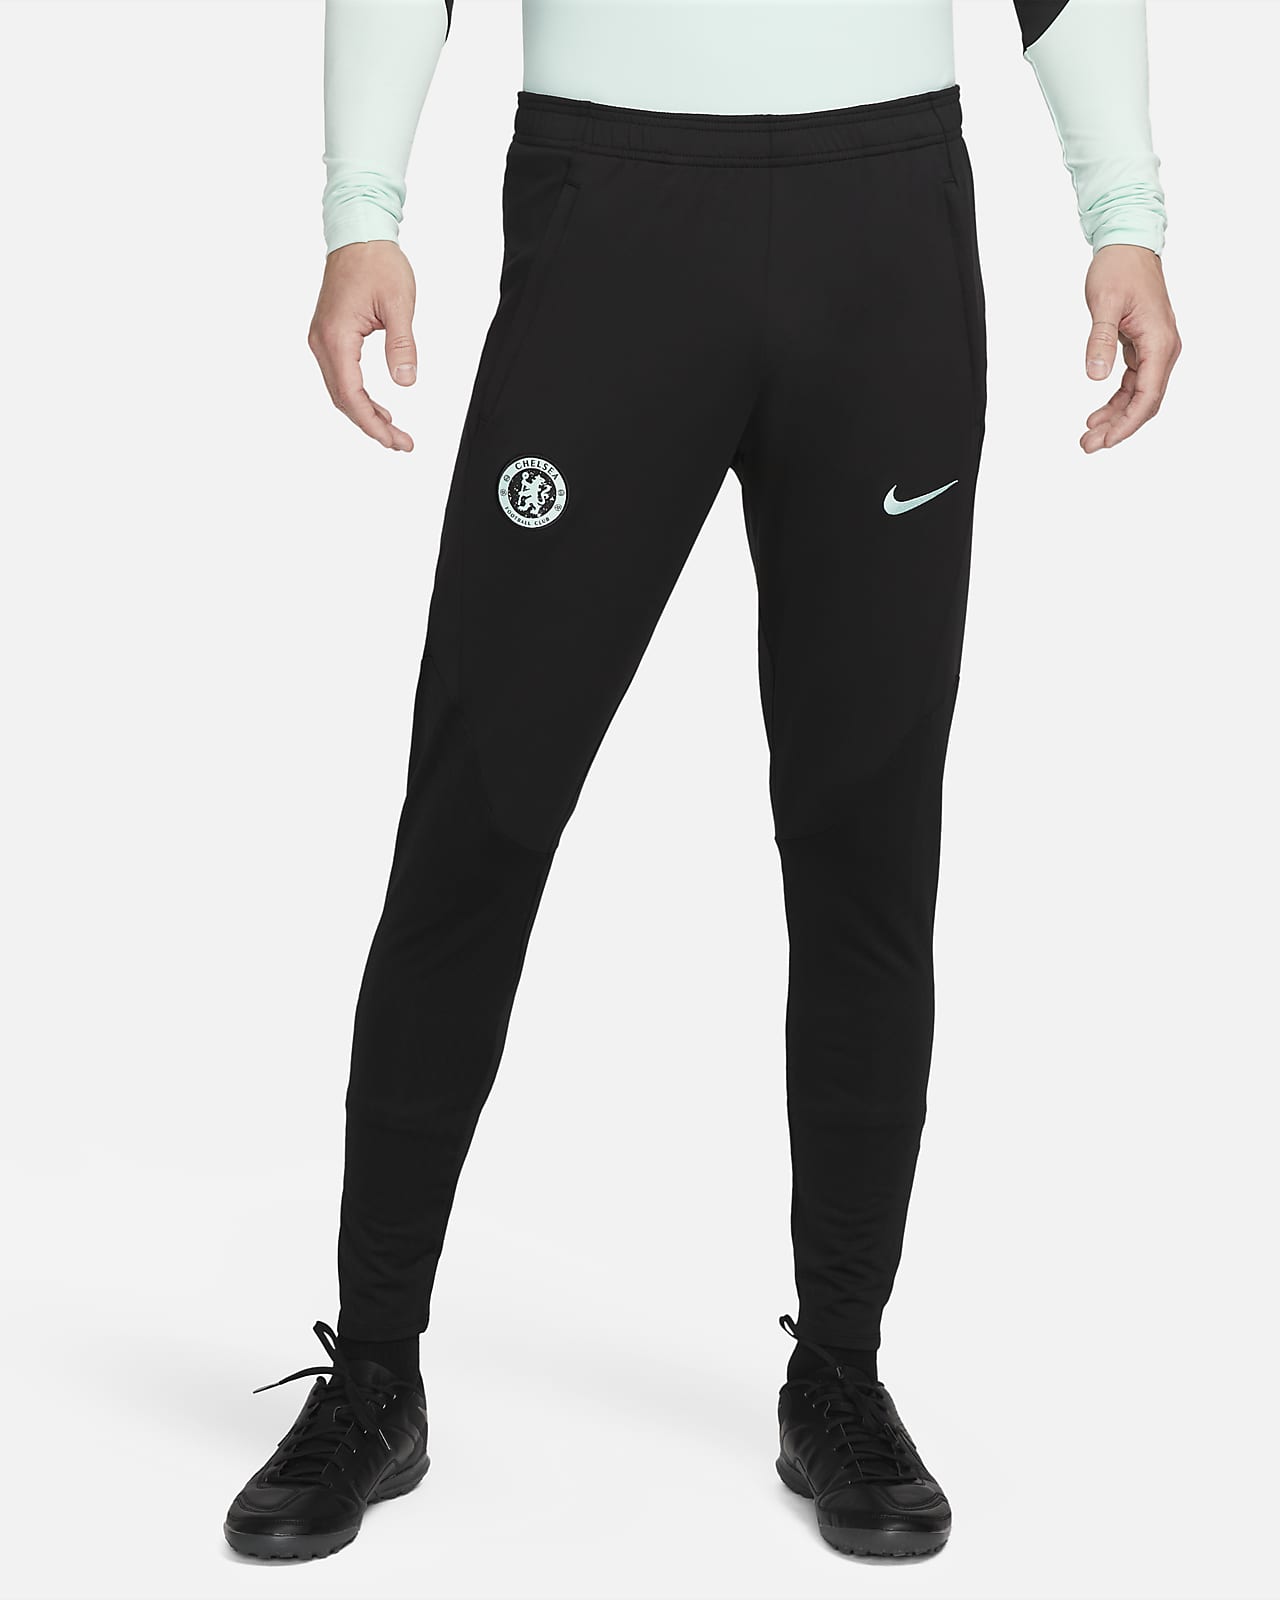 Chelsea FC Strike (tredjedrakt) Nike Dri-FIT strikket fotballbukse til herre 